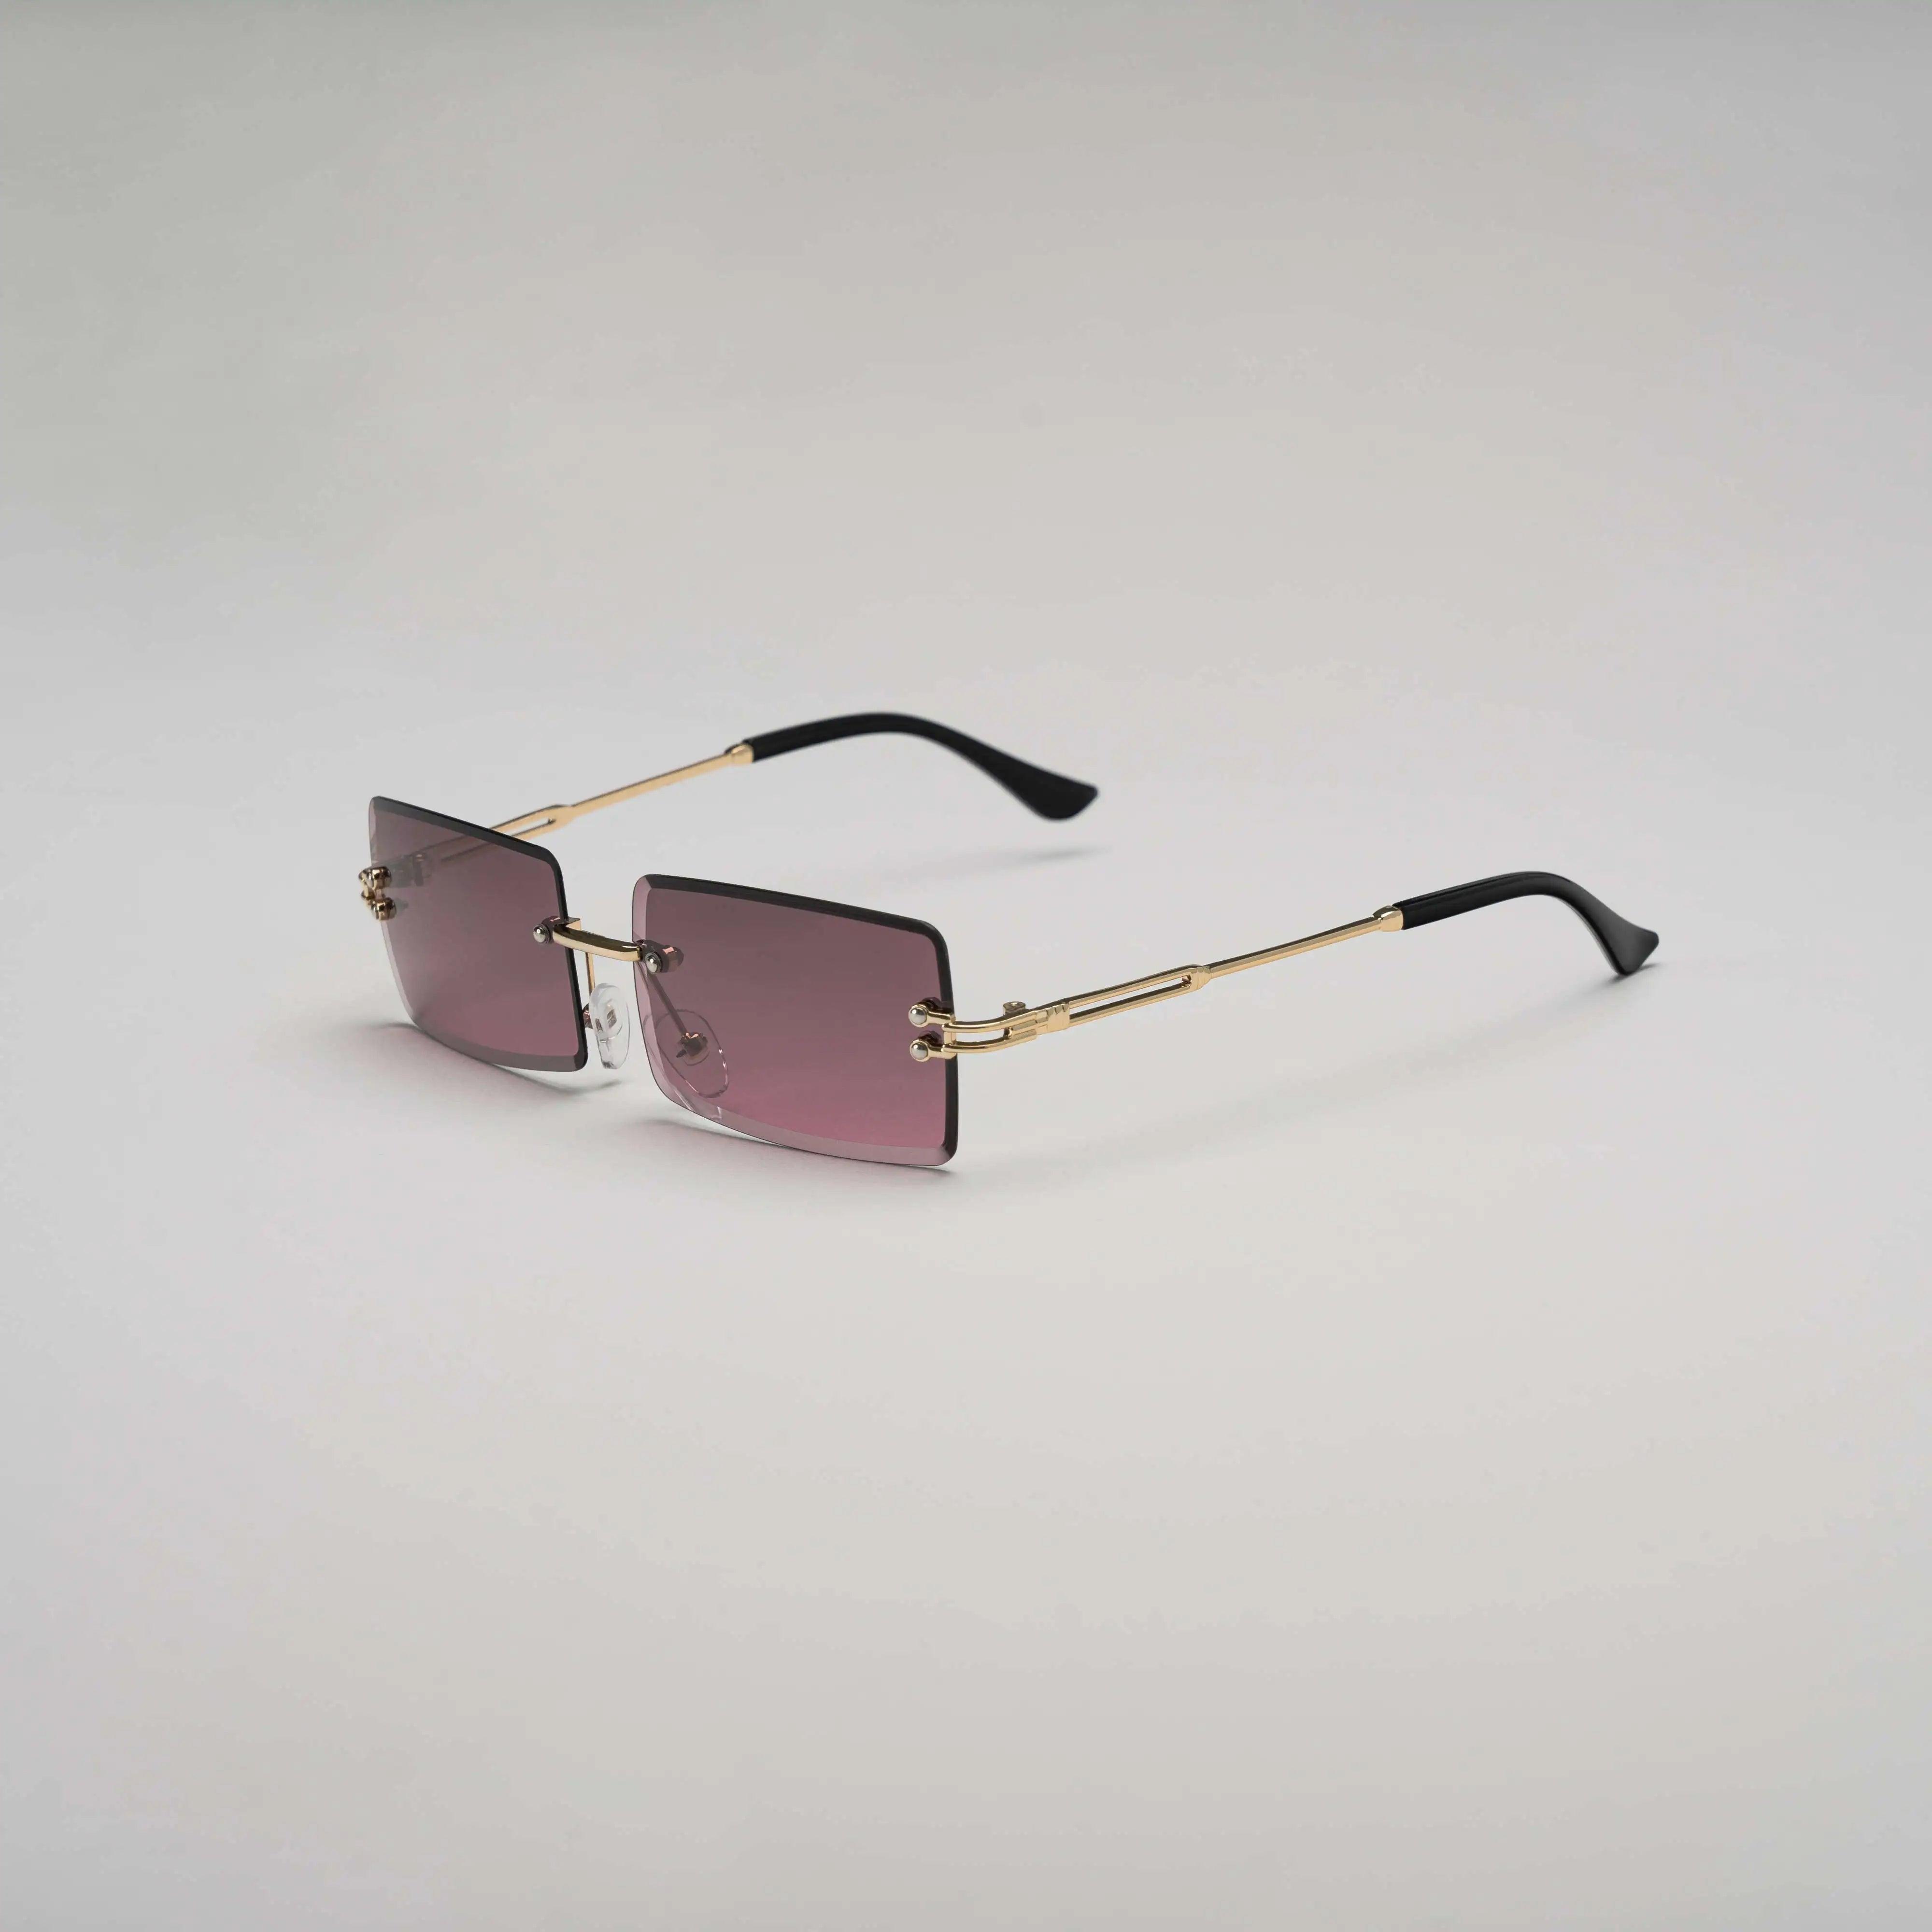 'Bad & Boujee' Retro Rimless Sunglasses in Wine & Gold